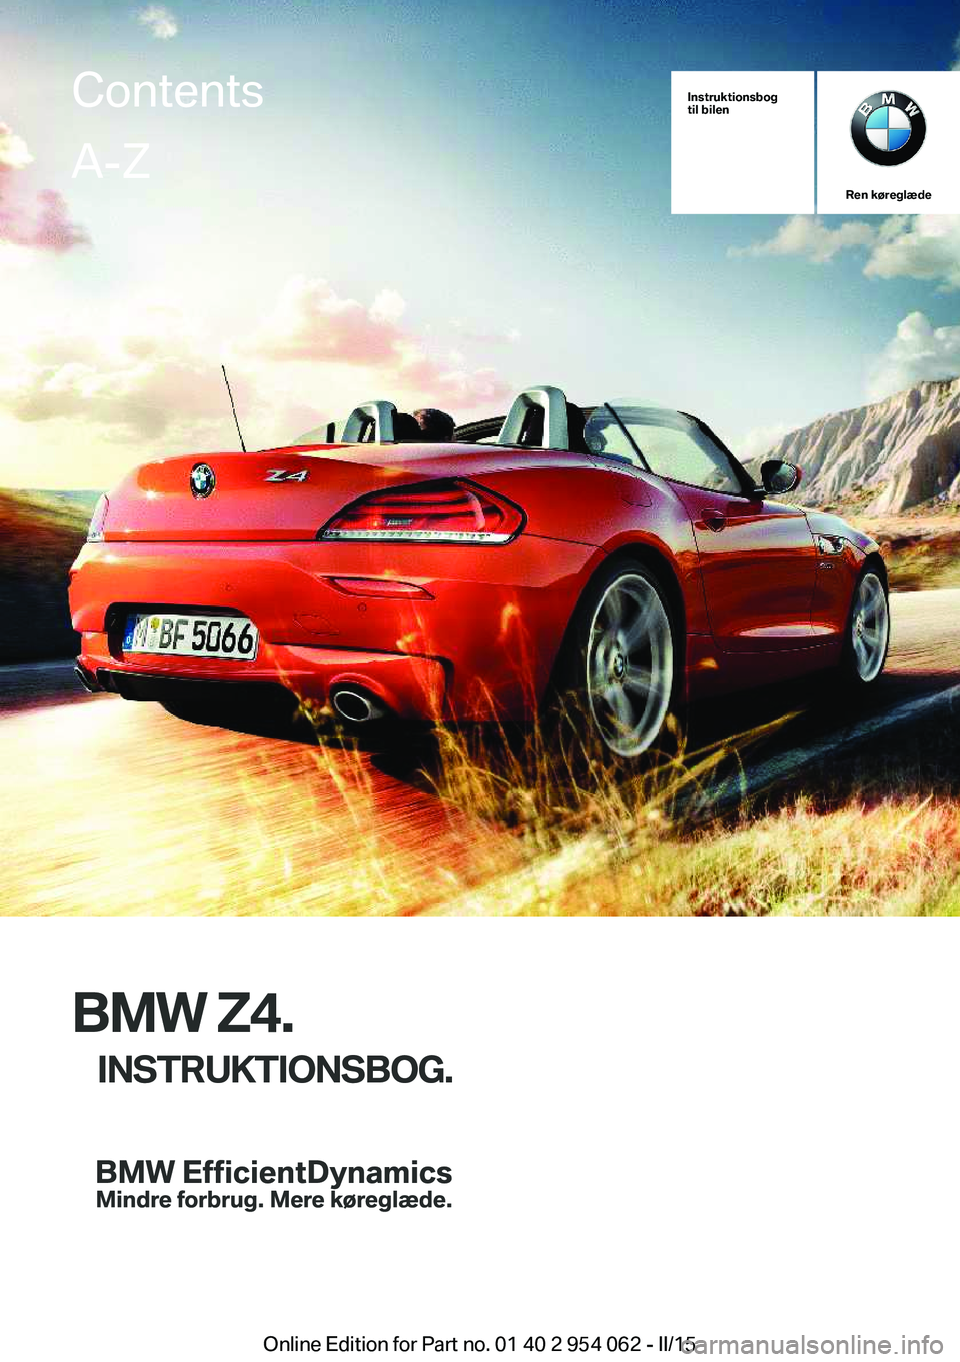 BMW Z4 2016  InstruktionsbØger (in Danish) Instruktionsbog
til bilen
Ren køreglæde
BMW Z4.
INSTRUKTIONSBOG.
ContentsA-Z
Online Edition for Part no. 01 40 2 954 062 - II/15   